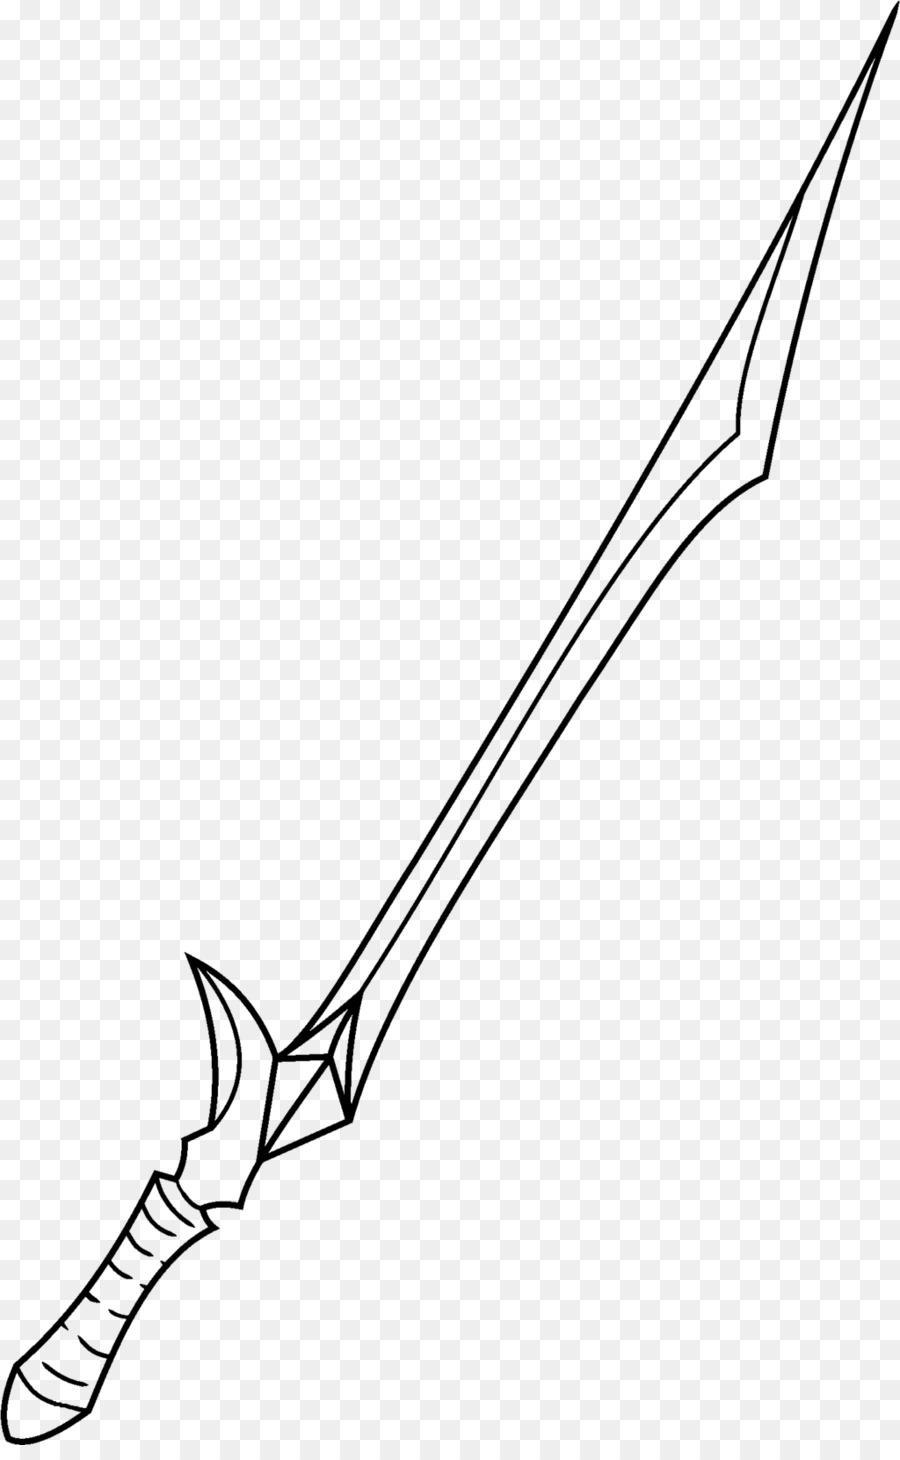 Sword Line Art